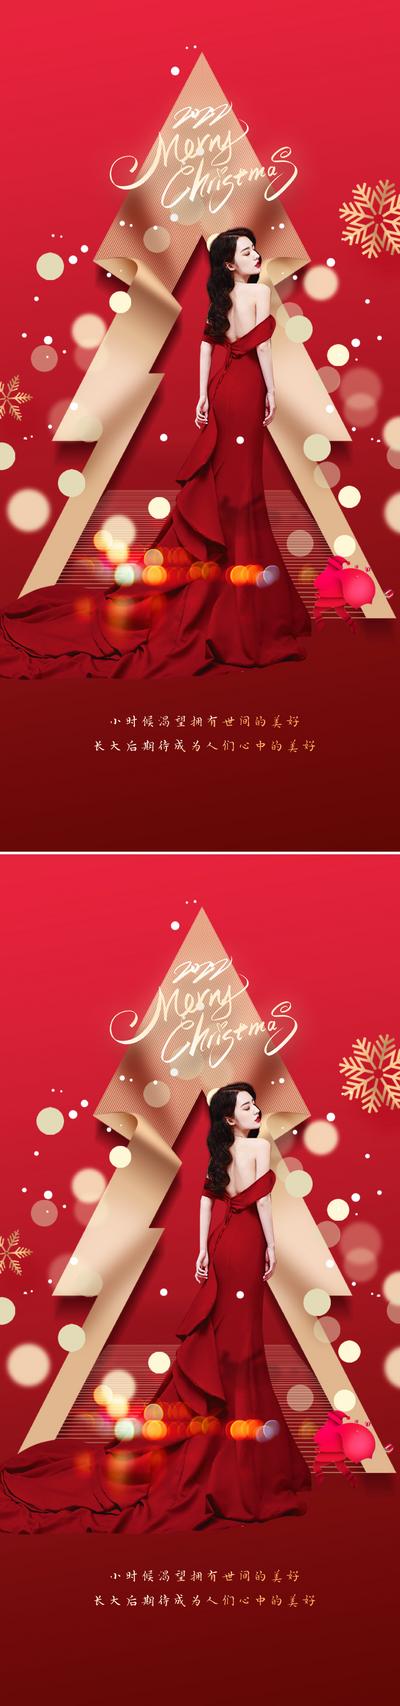 南门网 海报 医美 公历节日 圣诞节 红金 人物 礼物 圣诞树 